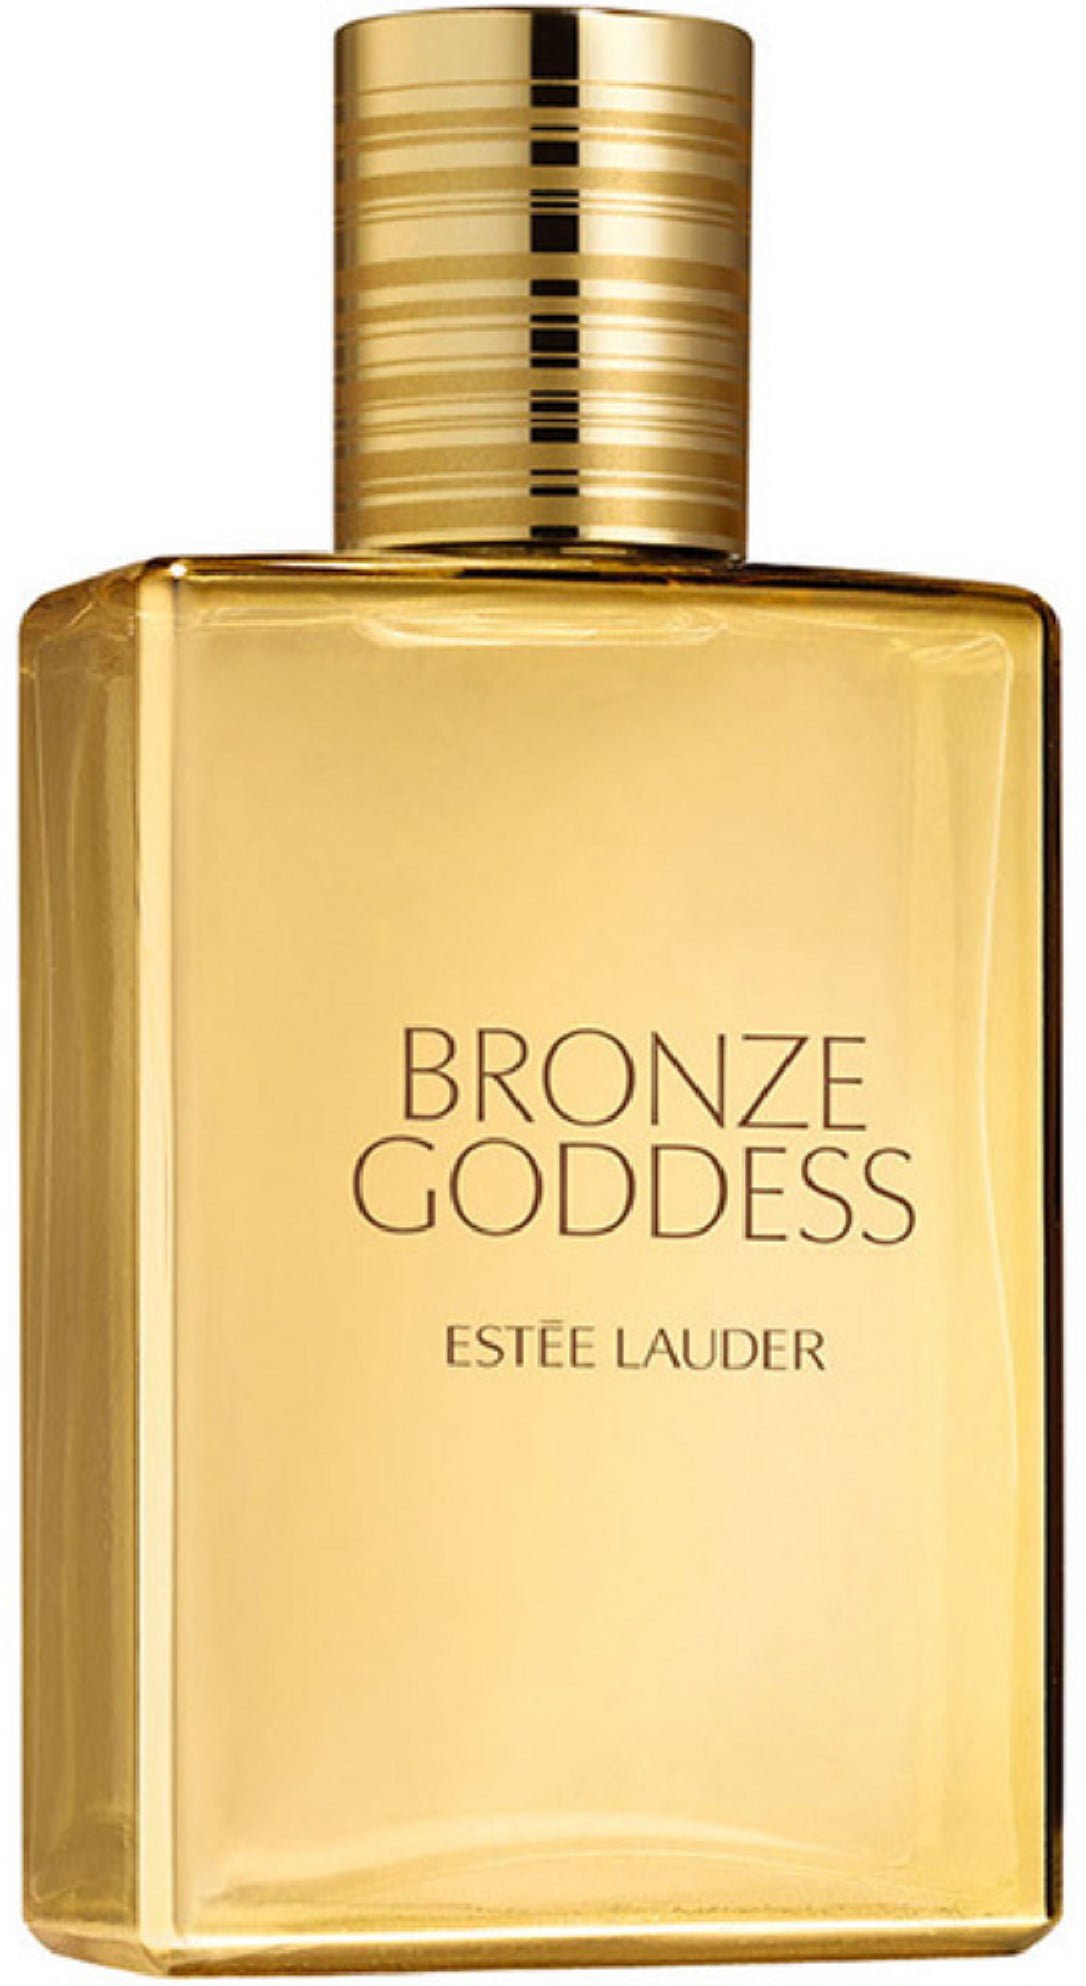 Uden for lidelse menneskemængde Estee Lauder Bronze Goddess Eau Fraiche Perfume for Women, 3.4 Oz -  Walmart.com